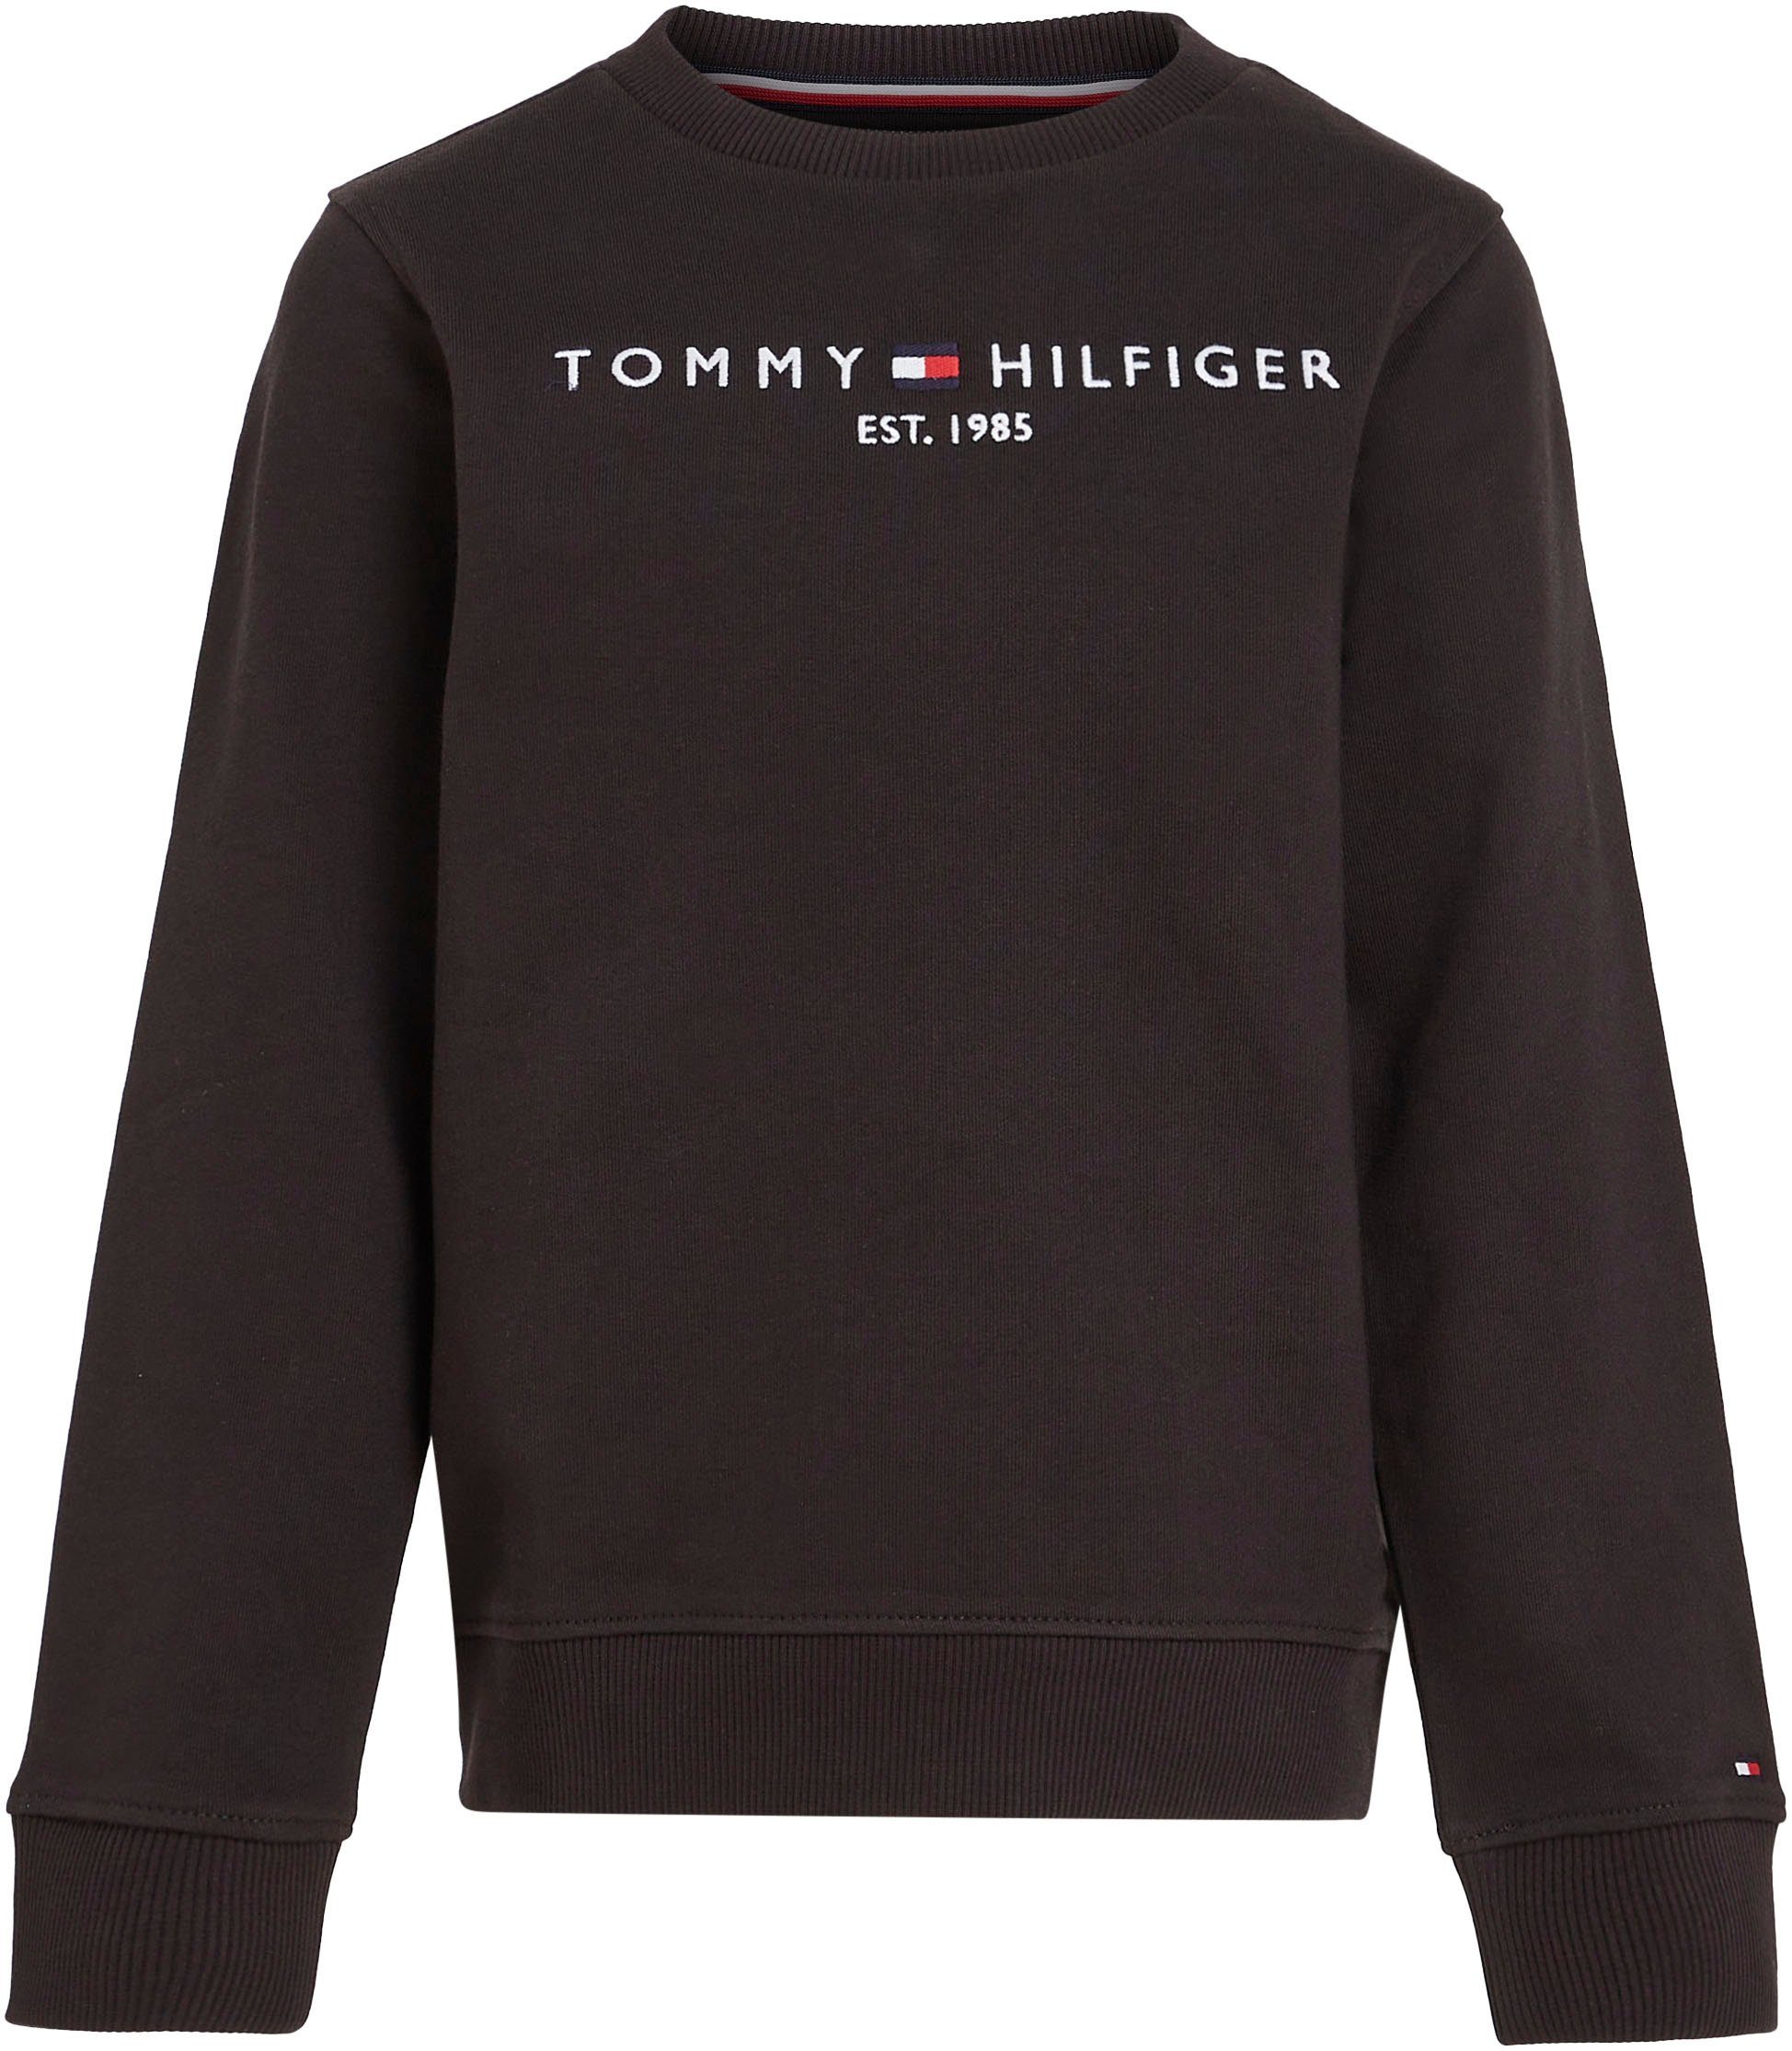 SWEATSHIRT für und Sweatshirt ESSENTIAL Mädchen Jungen Tommy Hilfiger